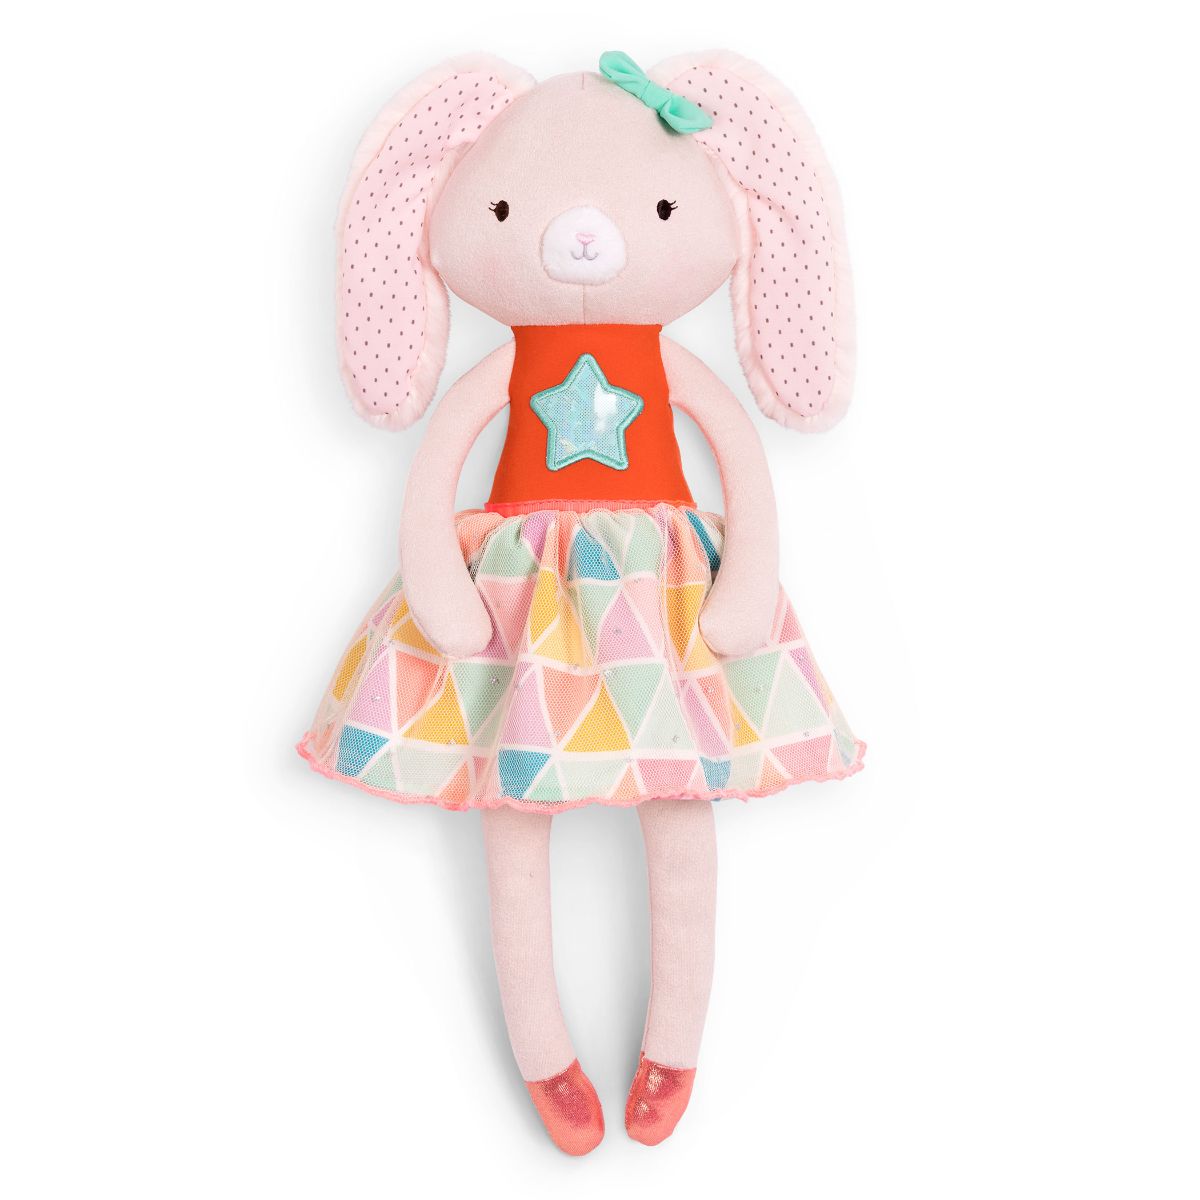 Bunny plush doll